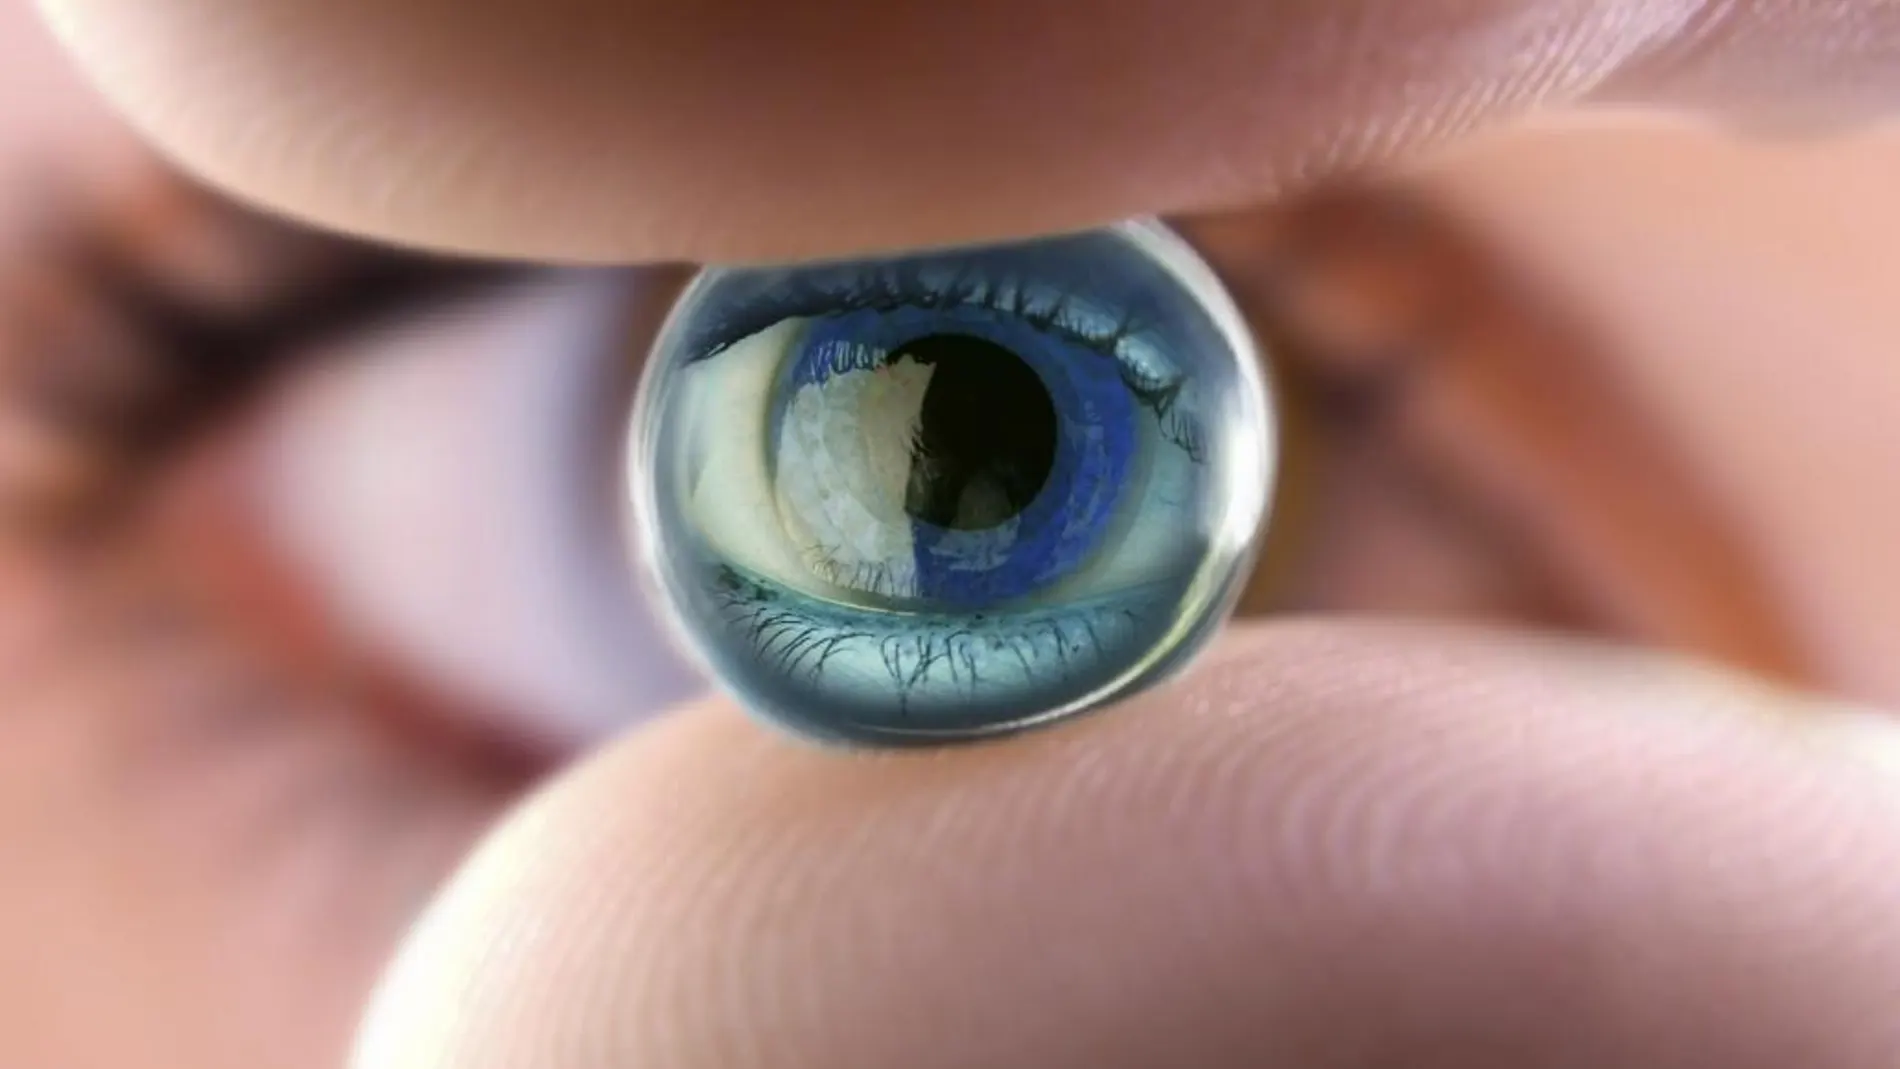 Detalle de un ojo artificial